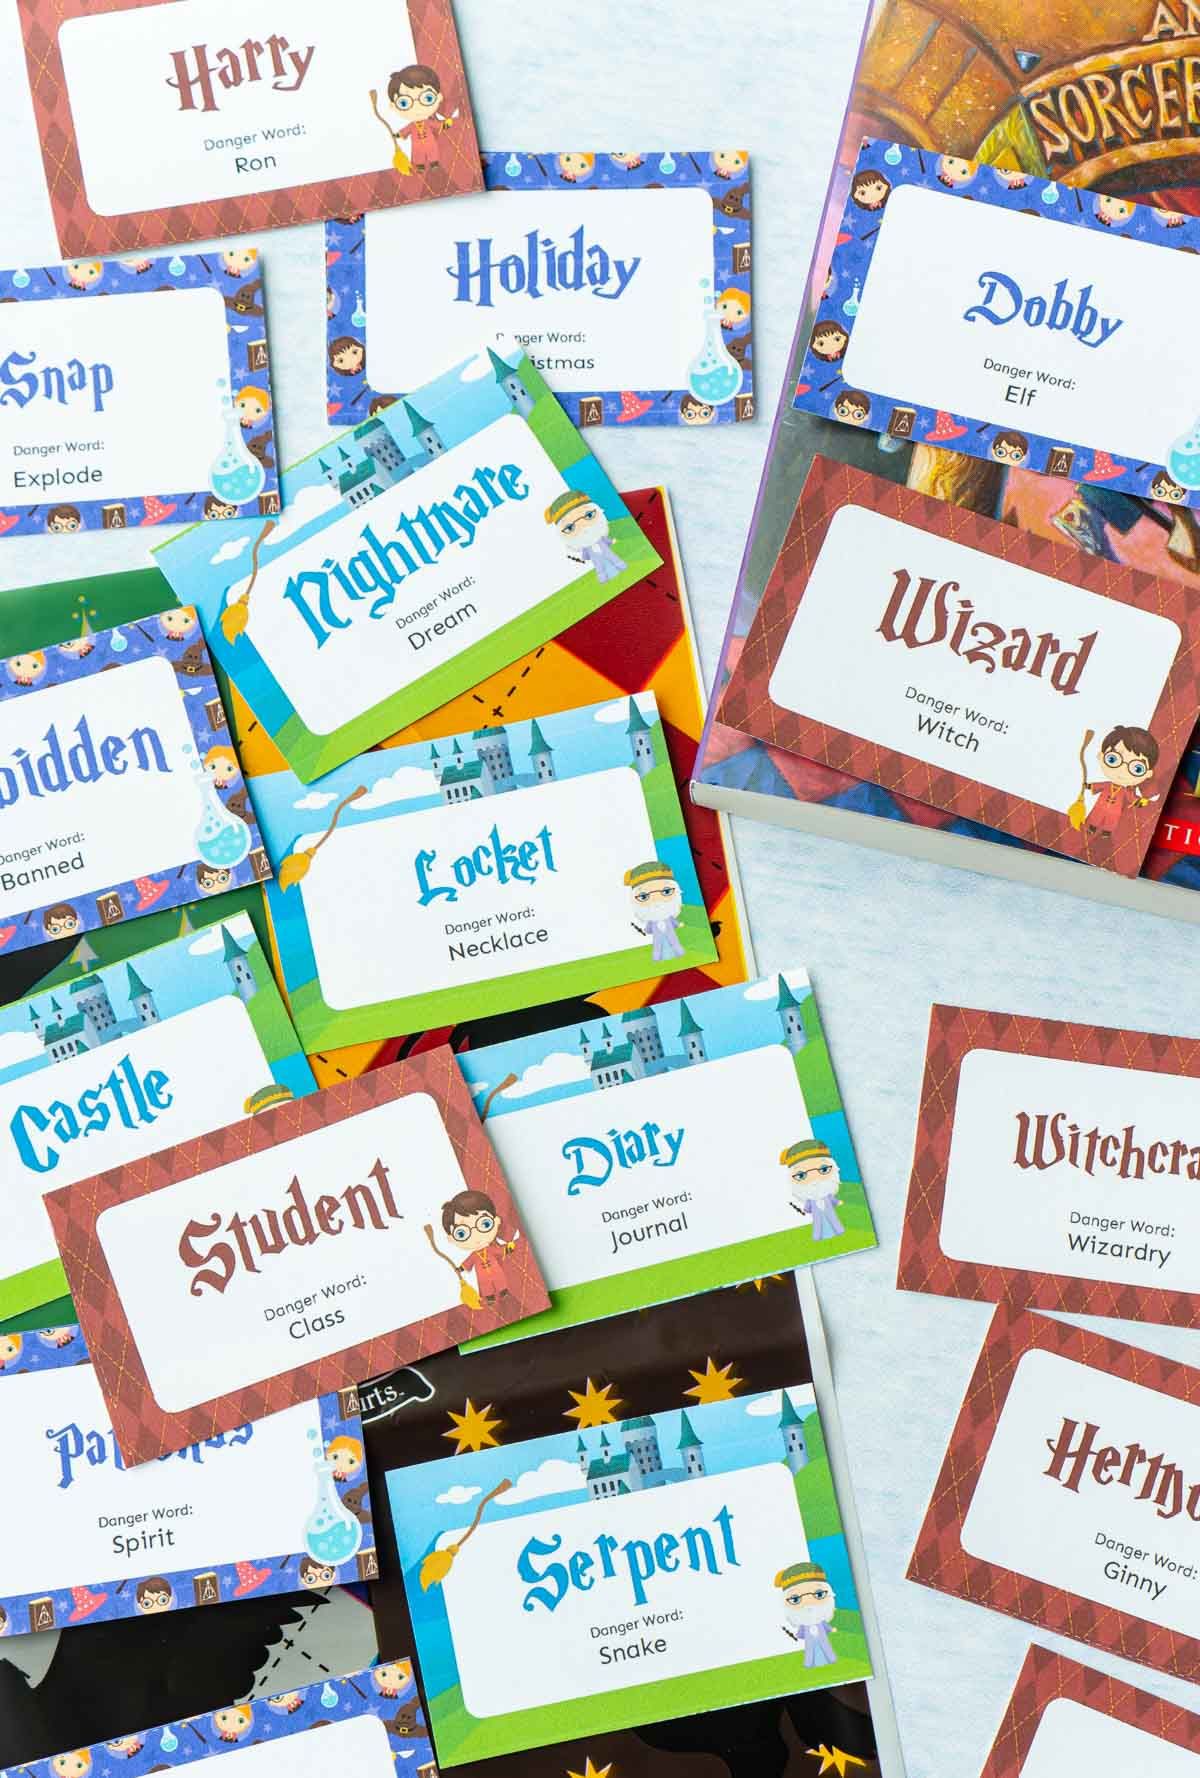 Pequeñas tarjetas con palabras de Harry Potter para un juego de palabras de peligro de Harry Potter